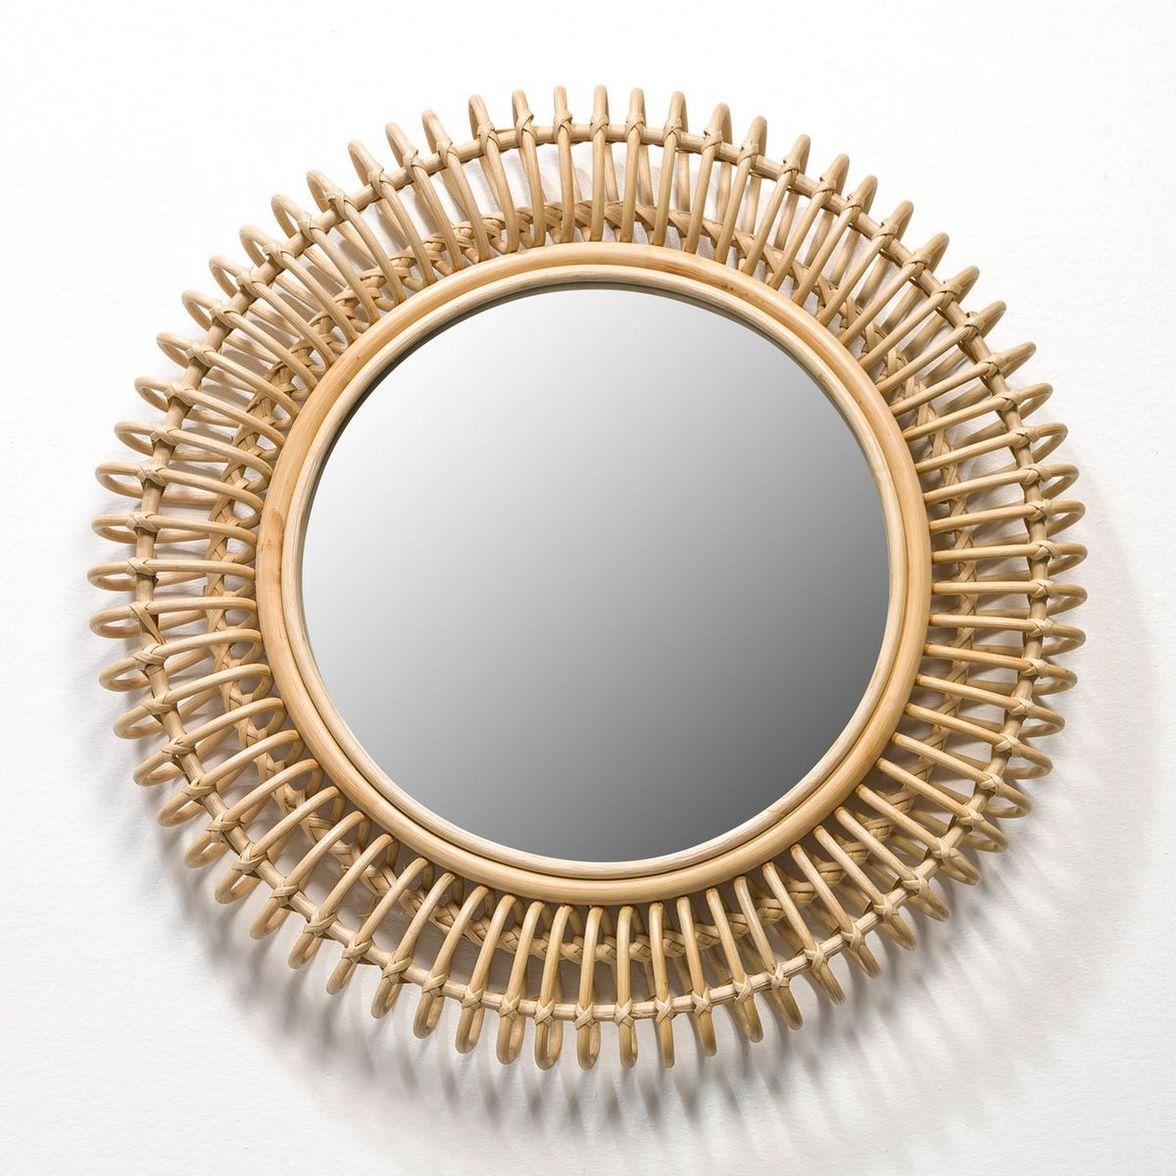 Miroir design français composé d'une structure ronde, incurvée et aérienne en rotin, design bohème chic et style tendance !